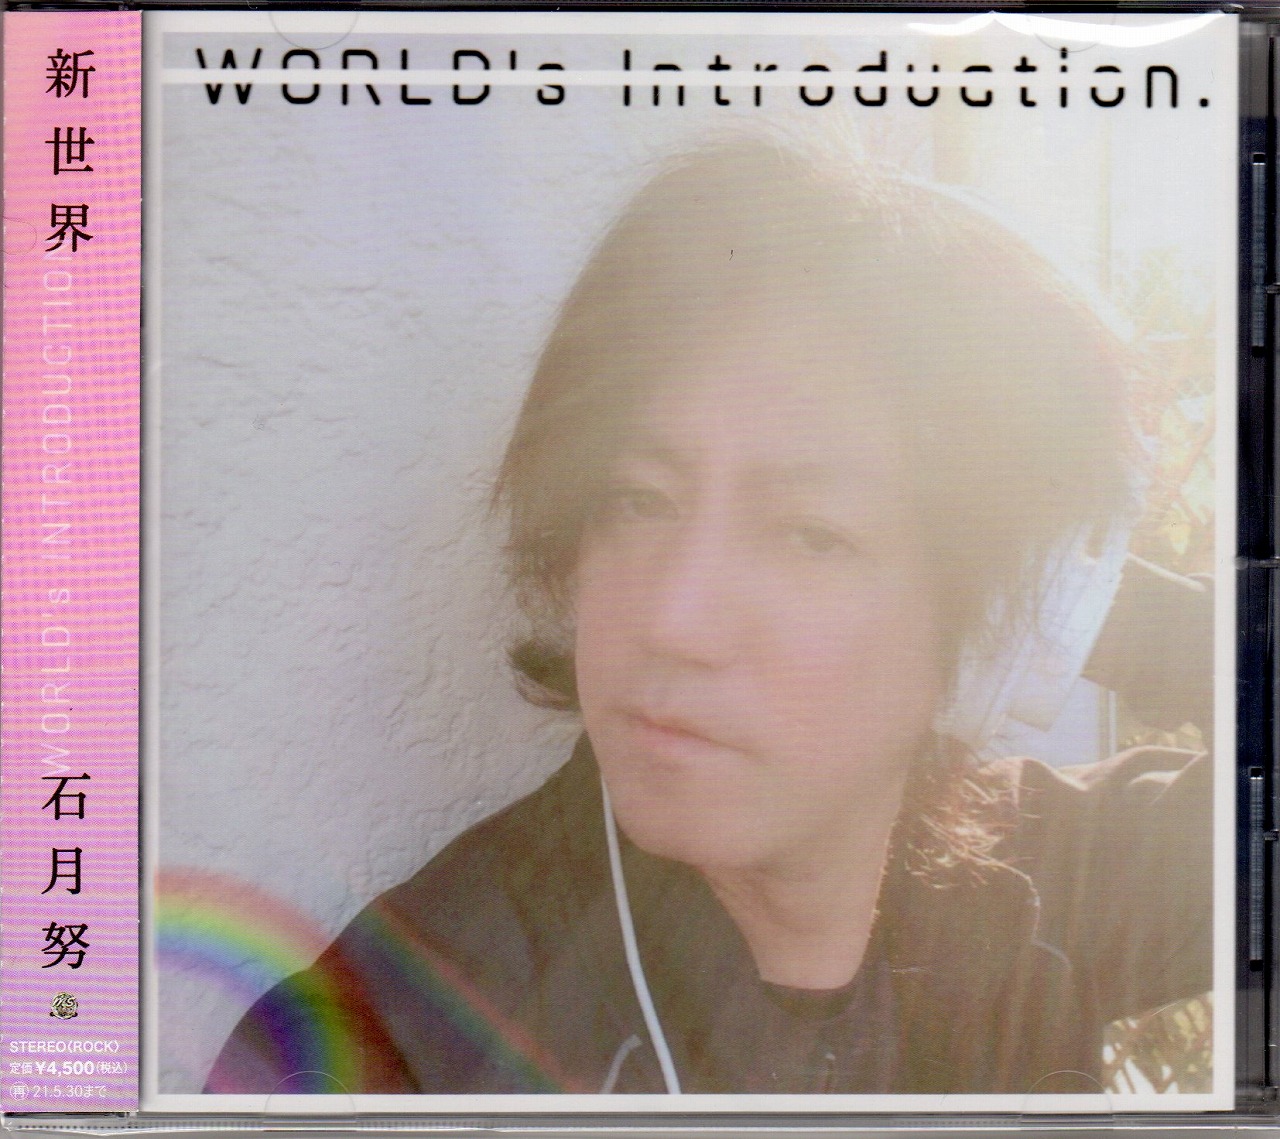 イシヅキツトム の CD 「新世界」-WORLD's INTRODUCTION-